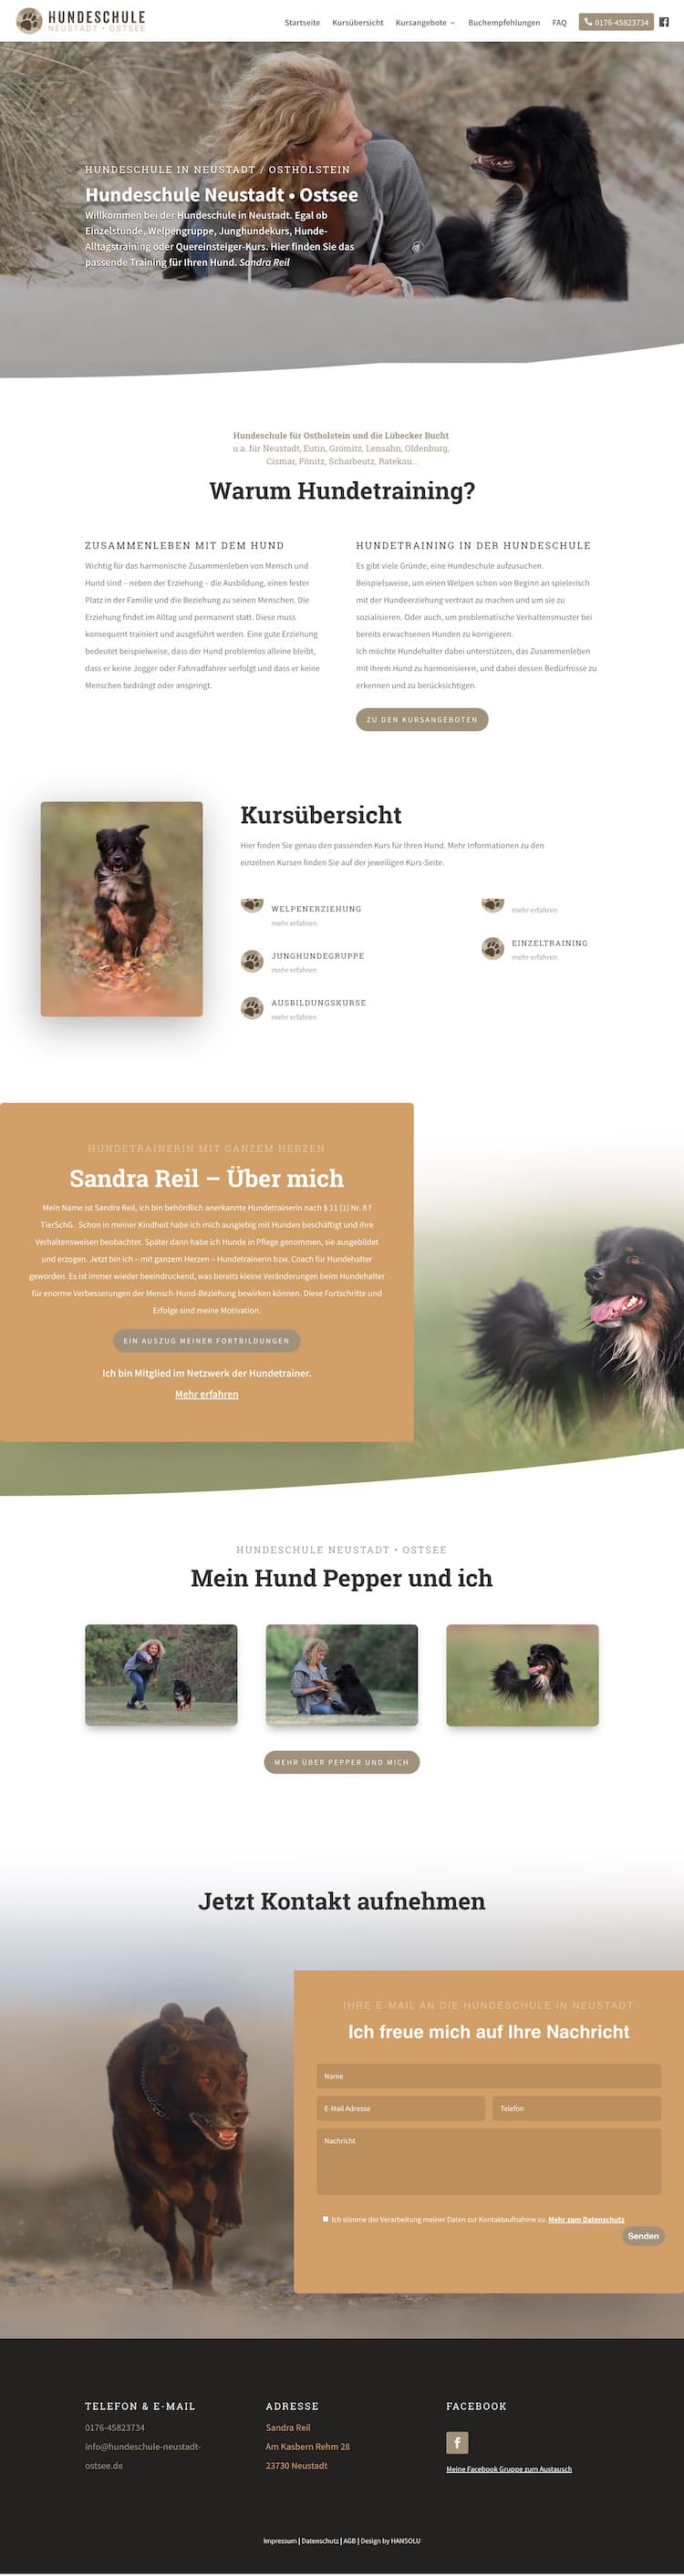 Website für Hundeschule